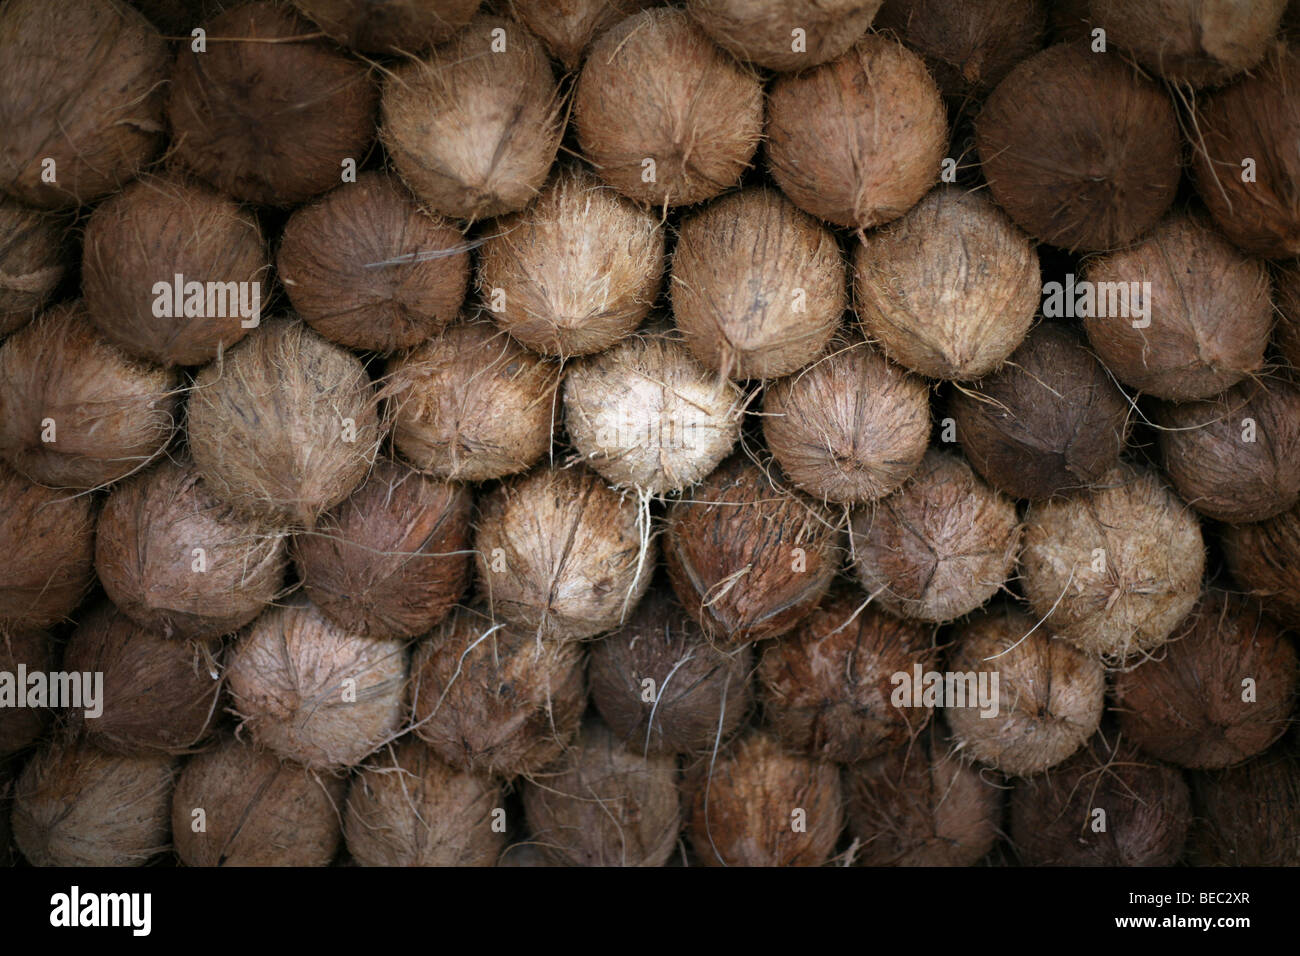 Lagerung Kokosnuss Essen Obst cocoanut Stockfoto